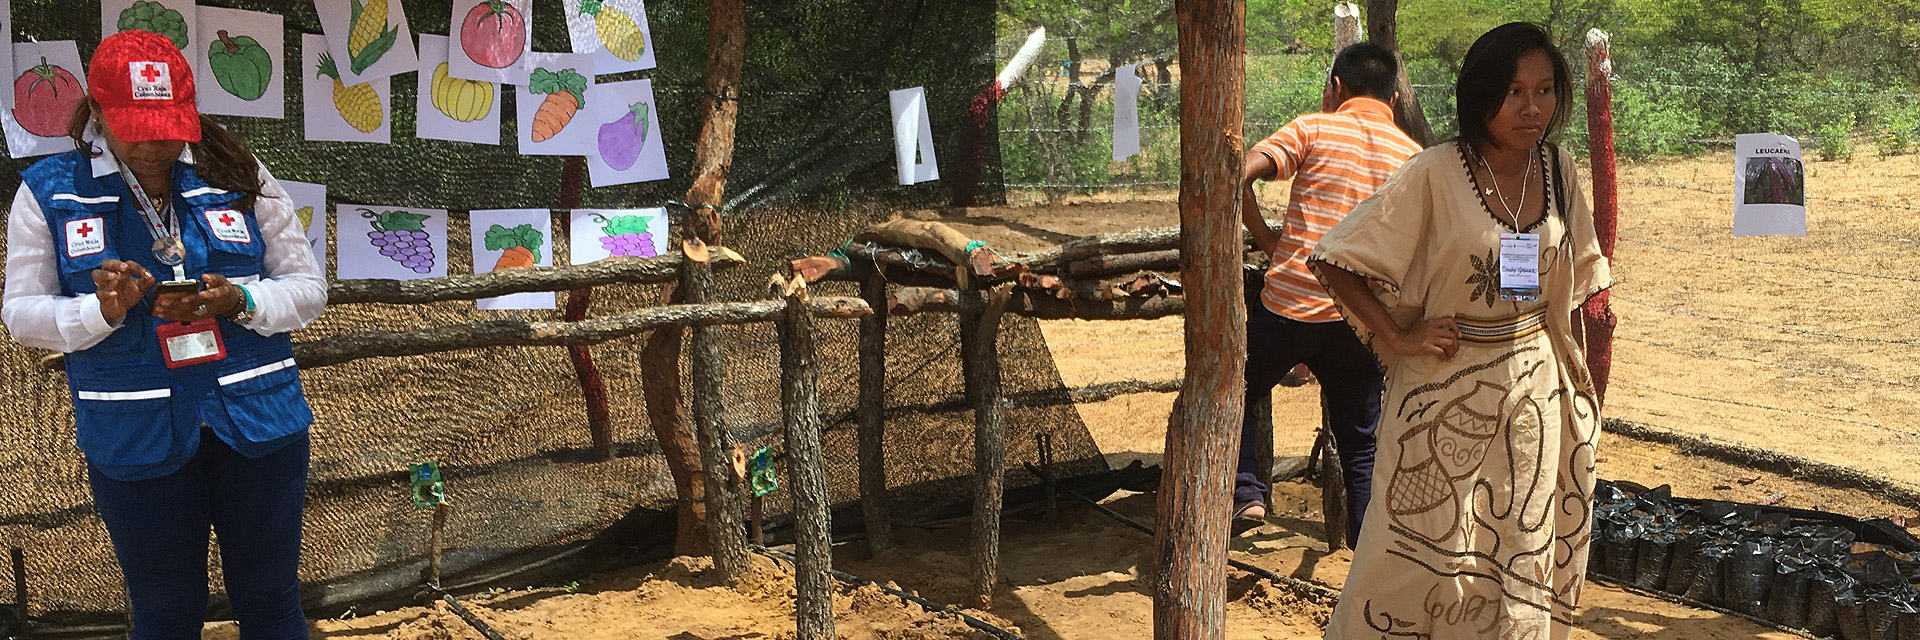 In Guajira wird der bevölkerung gezeigt, wie sie etwas anbauen können, trotz Klimawandel und Dürre